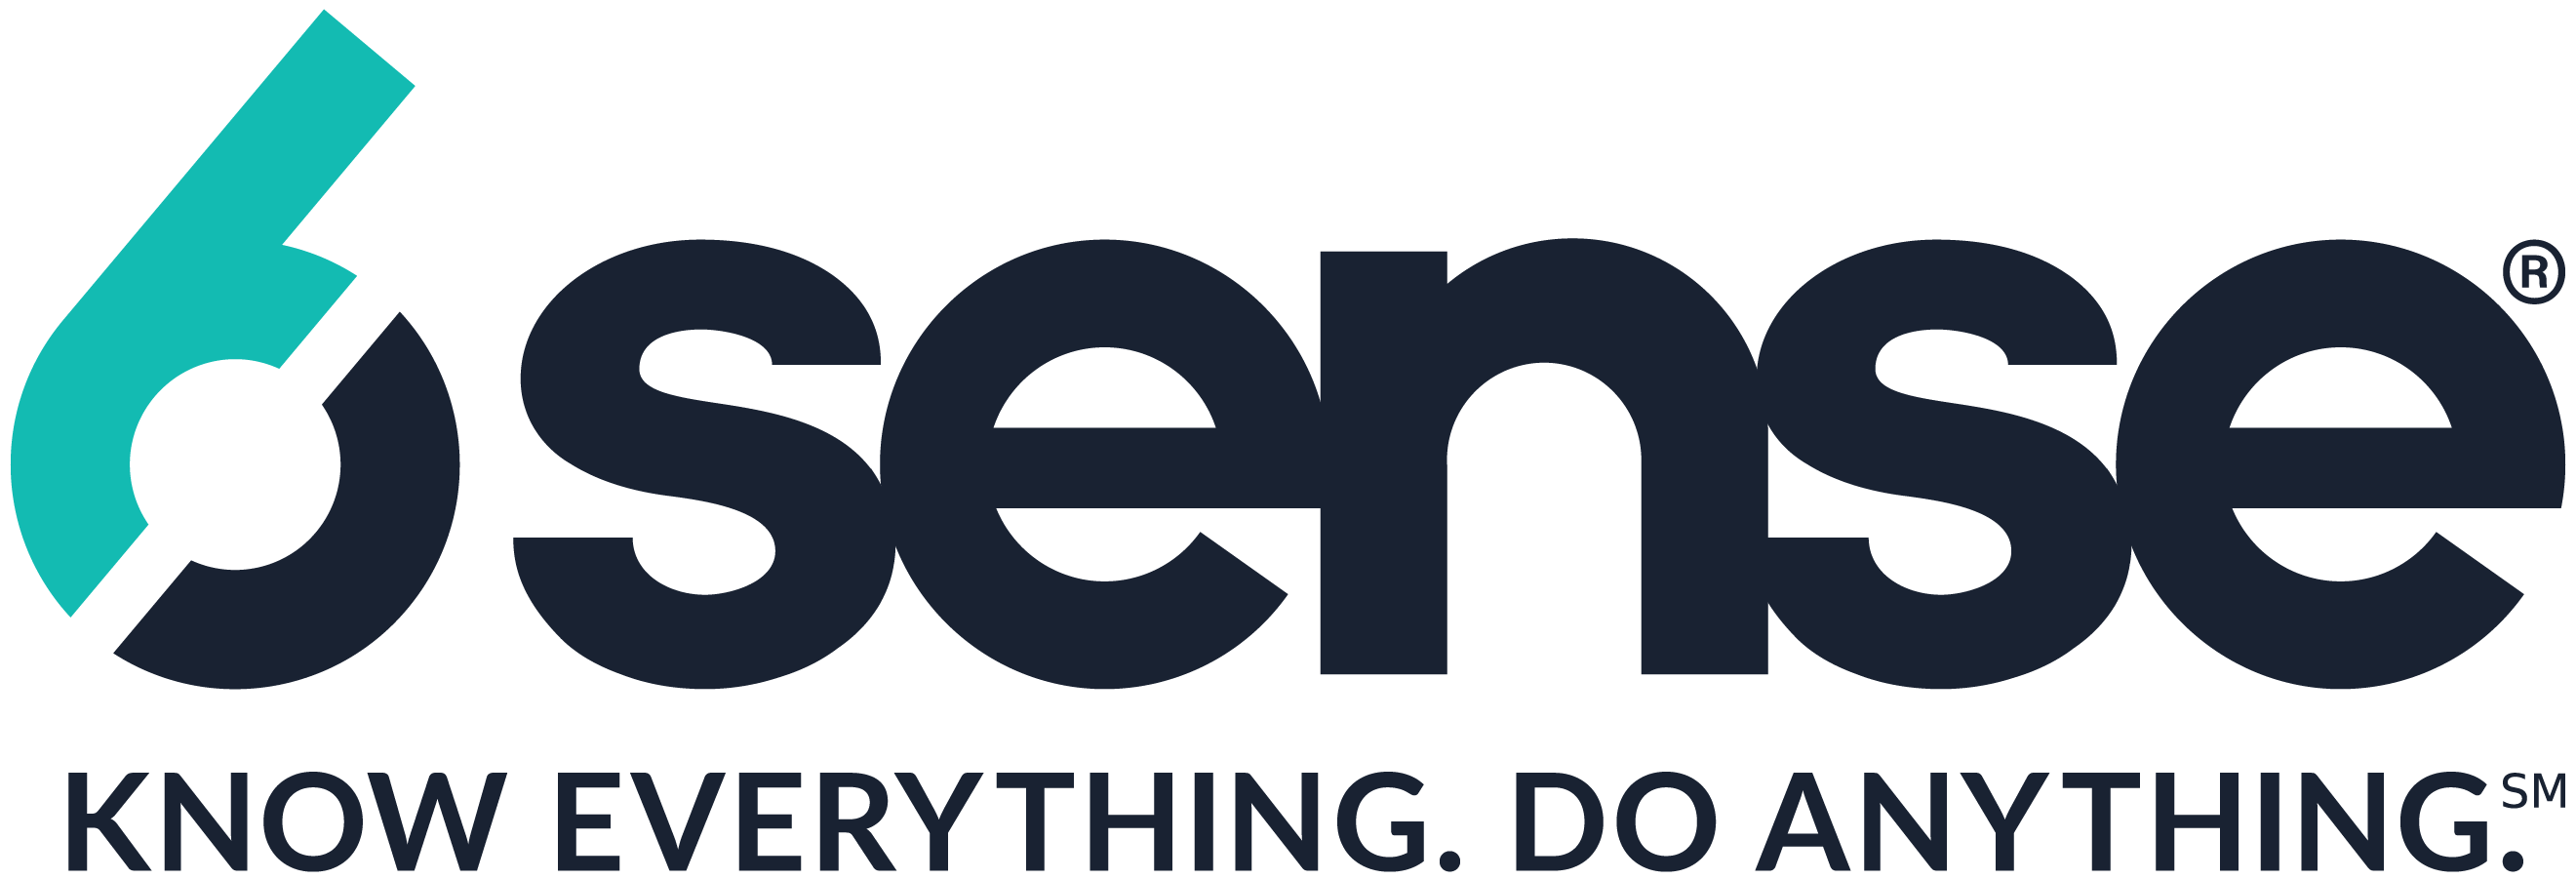 6Sense_logo